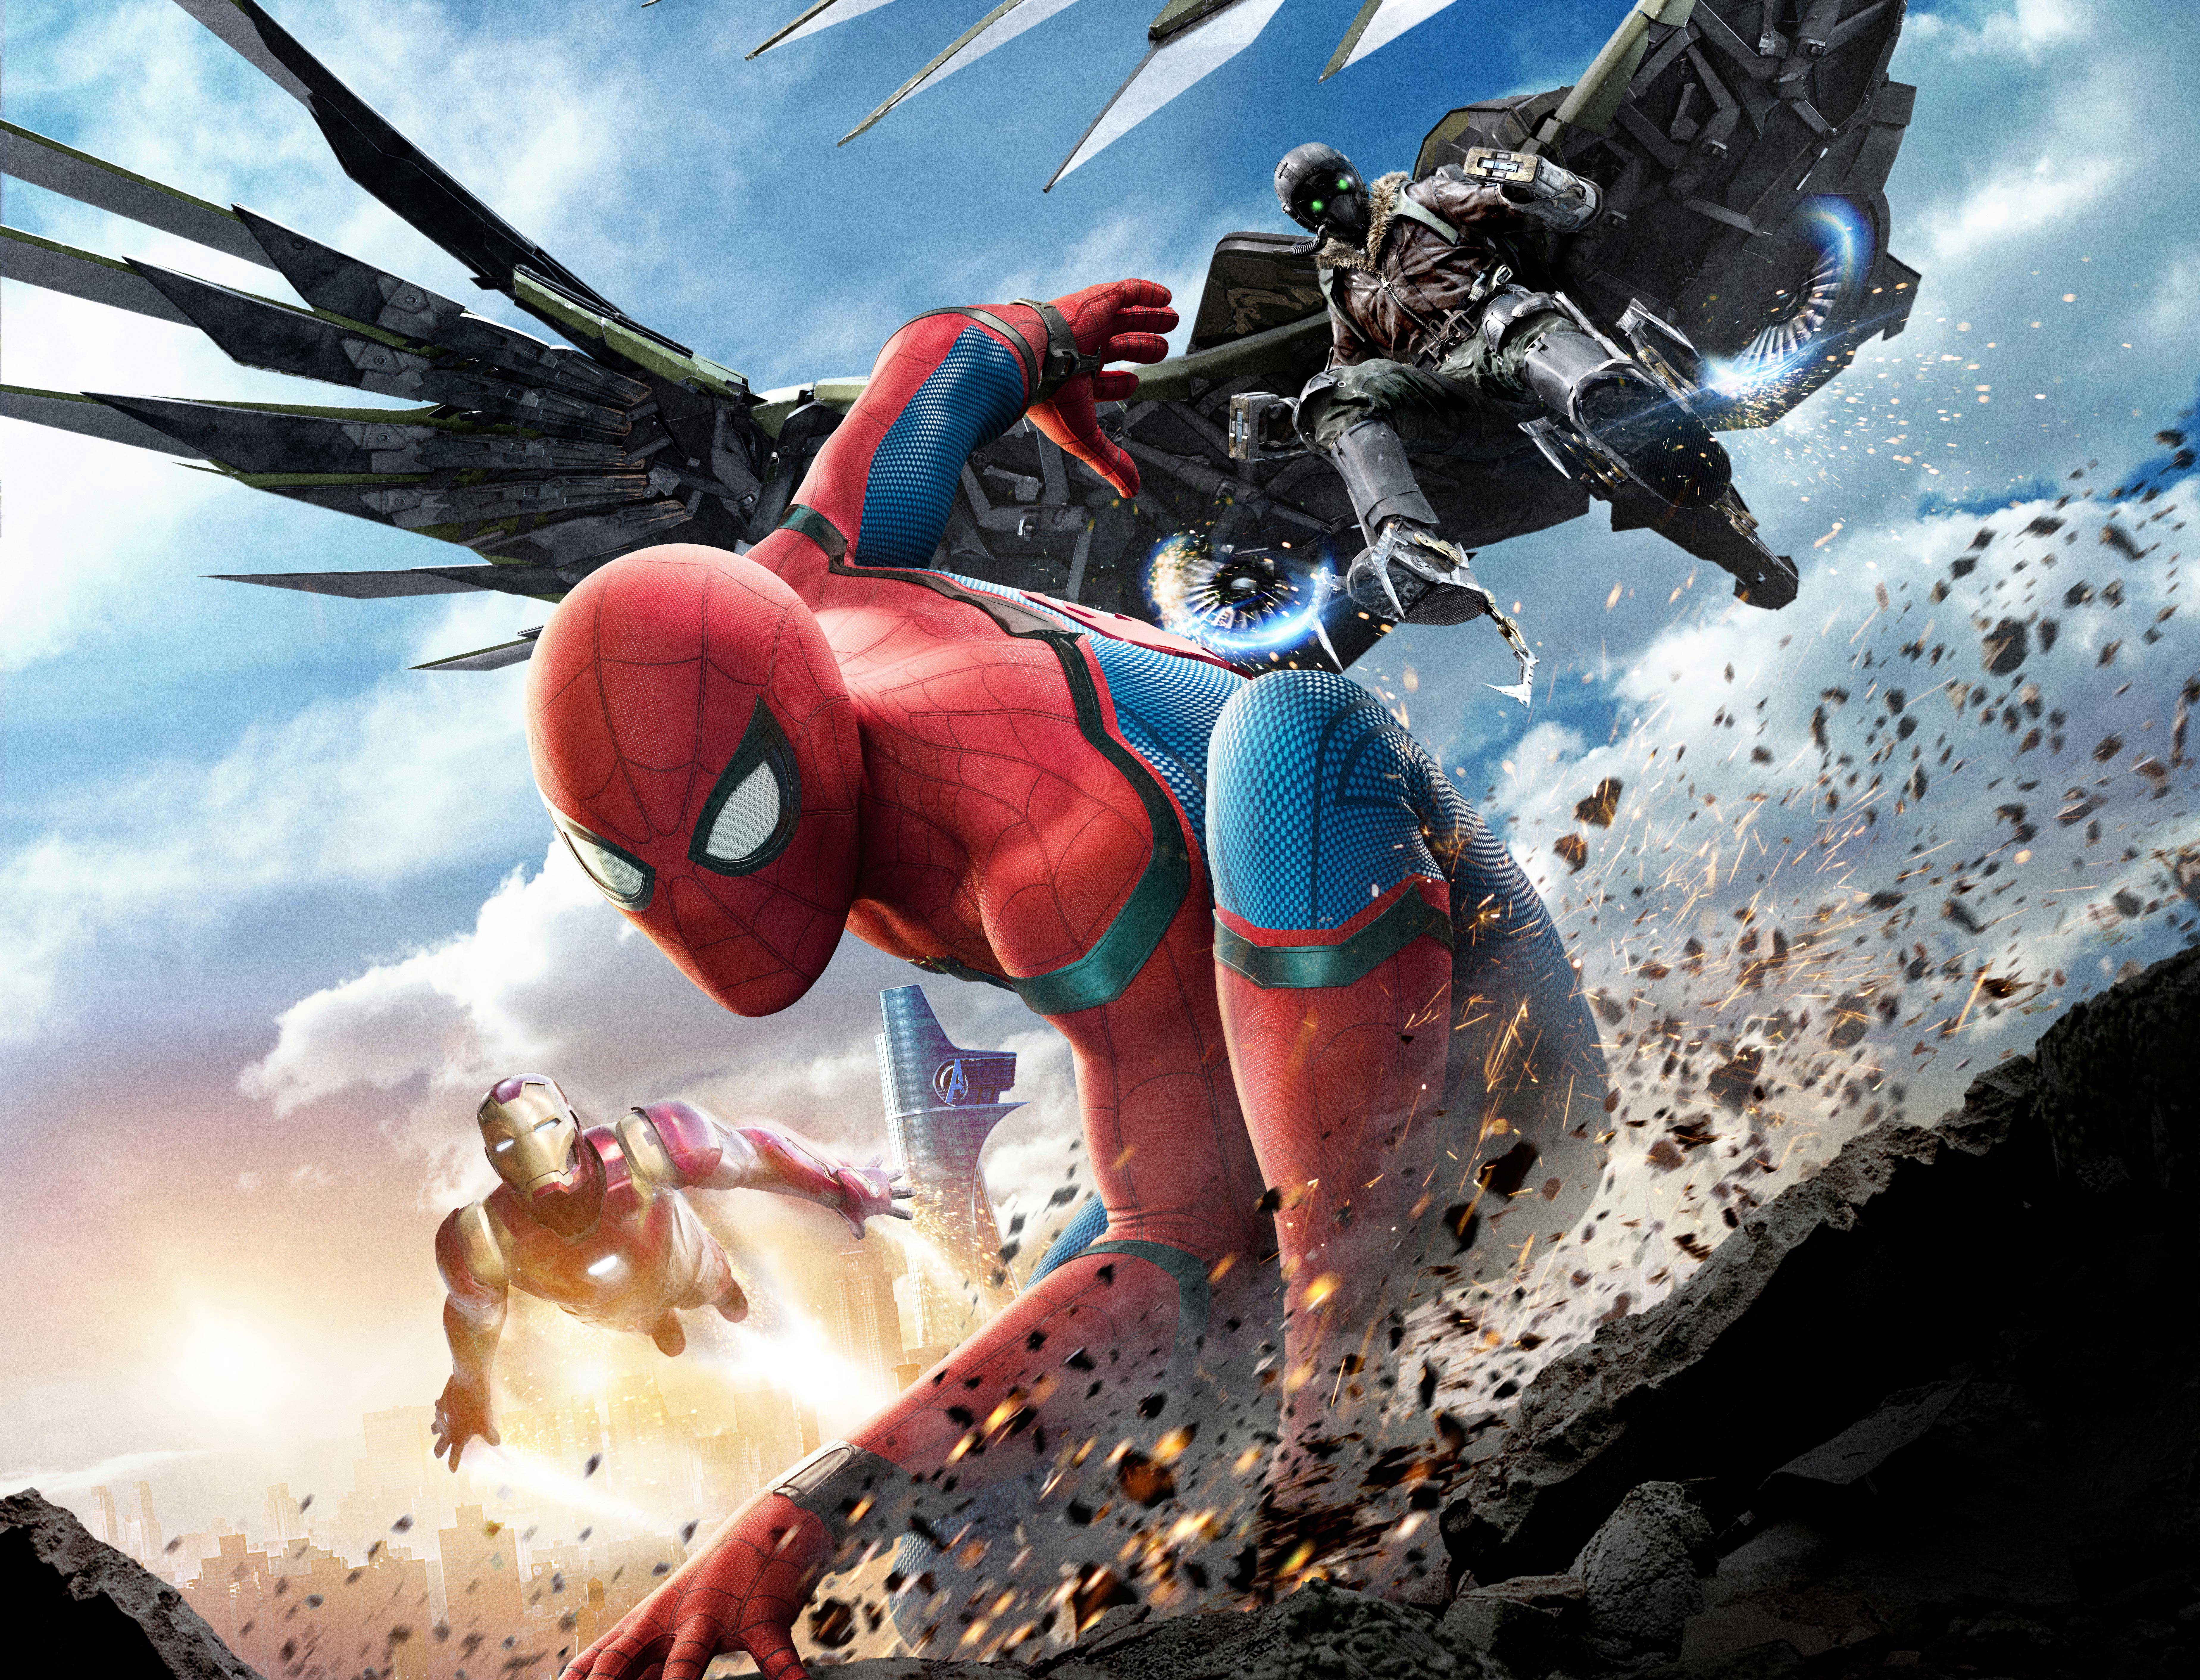 fond d'écran spiderman retour à la maison,jeu d'aventure d'action,personnage fictif,super héros,oeuvre de cg,dessin animé